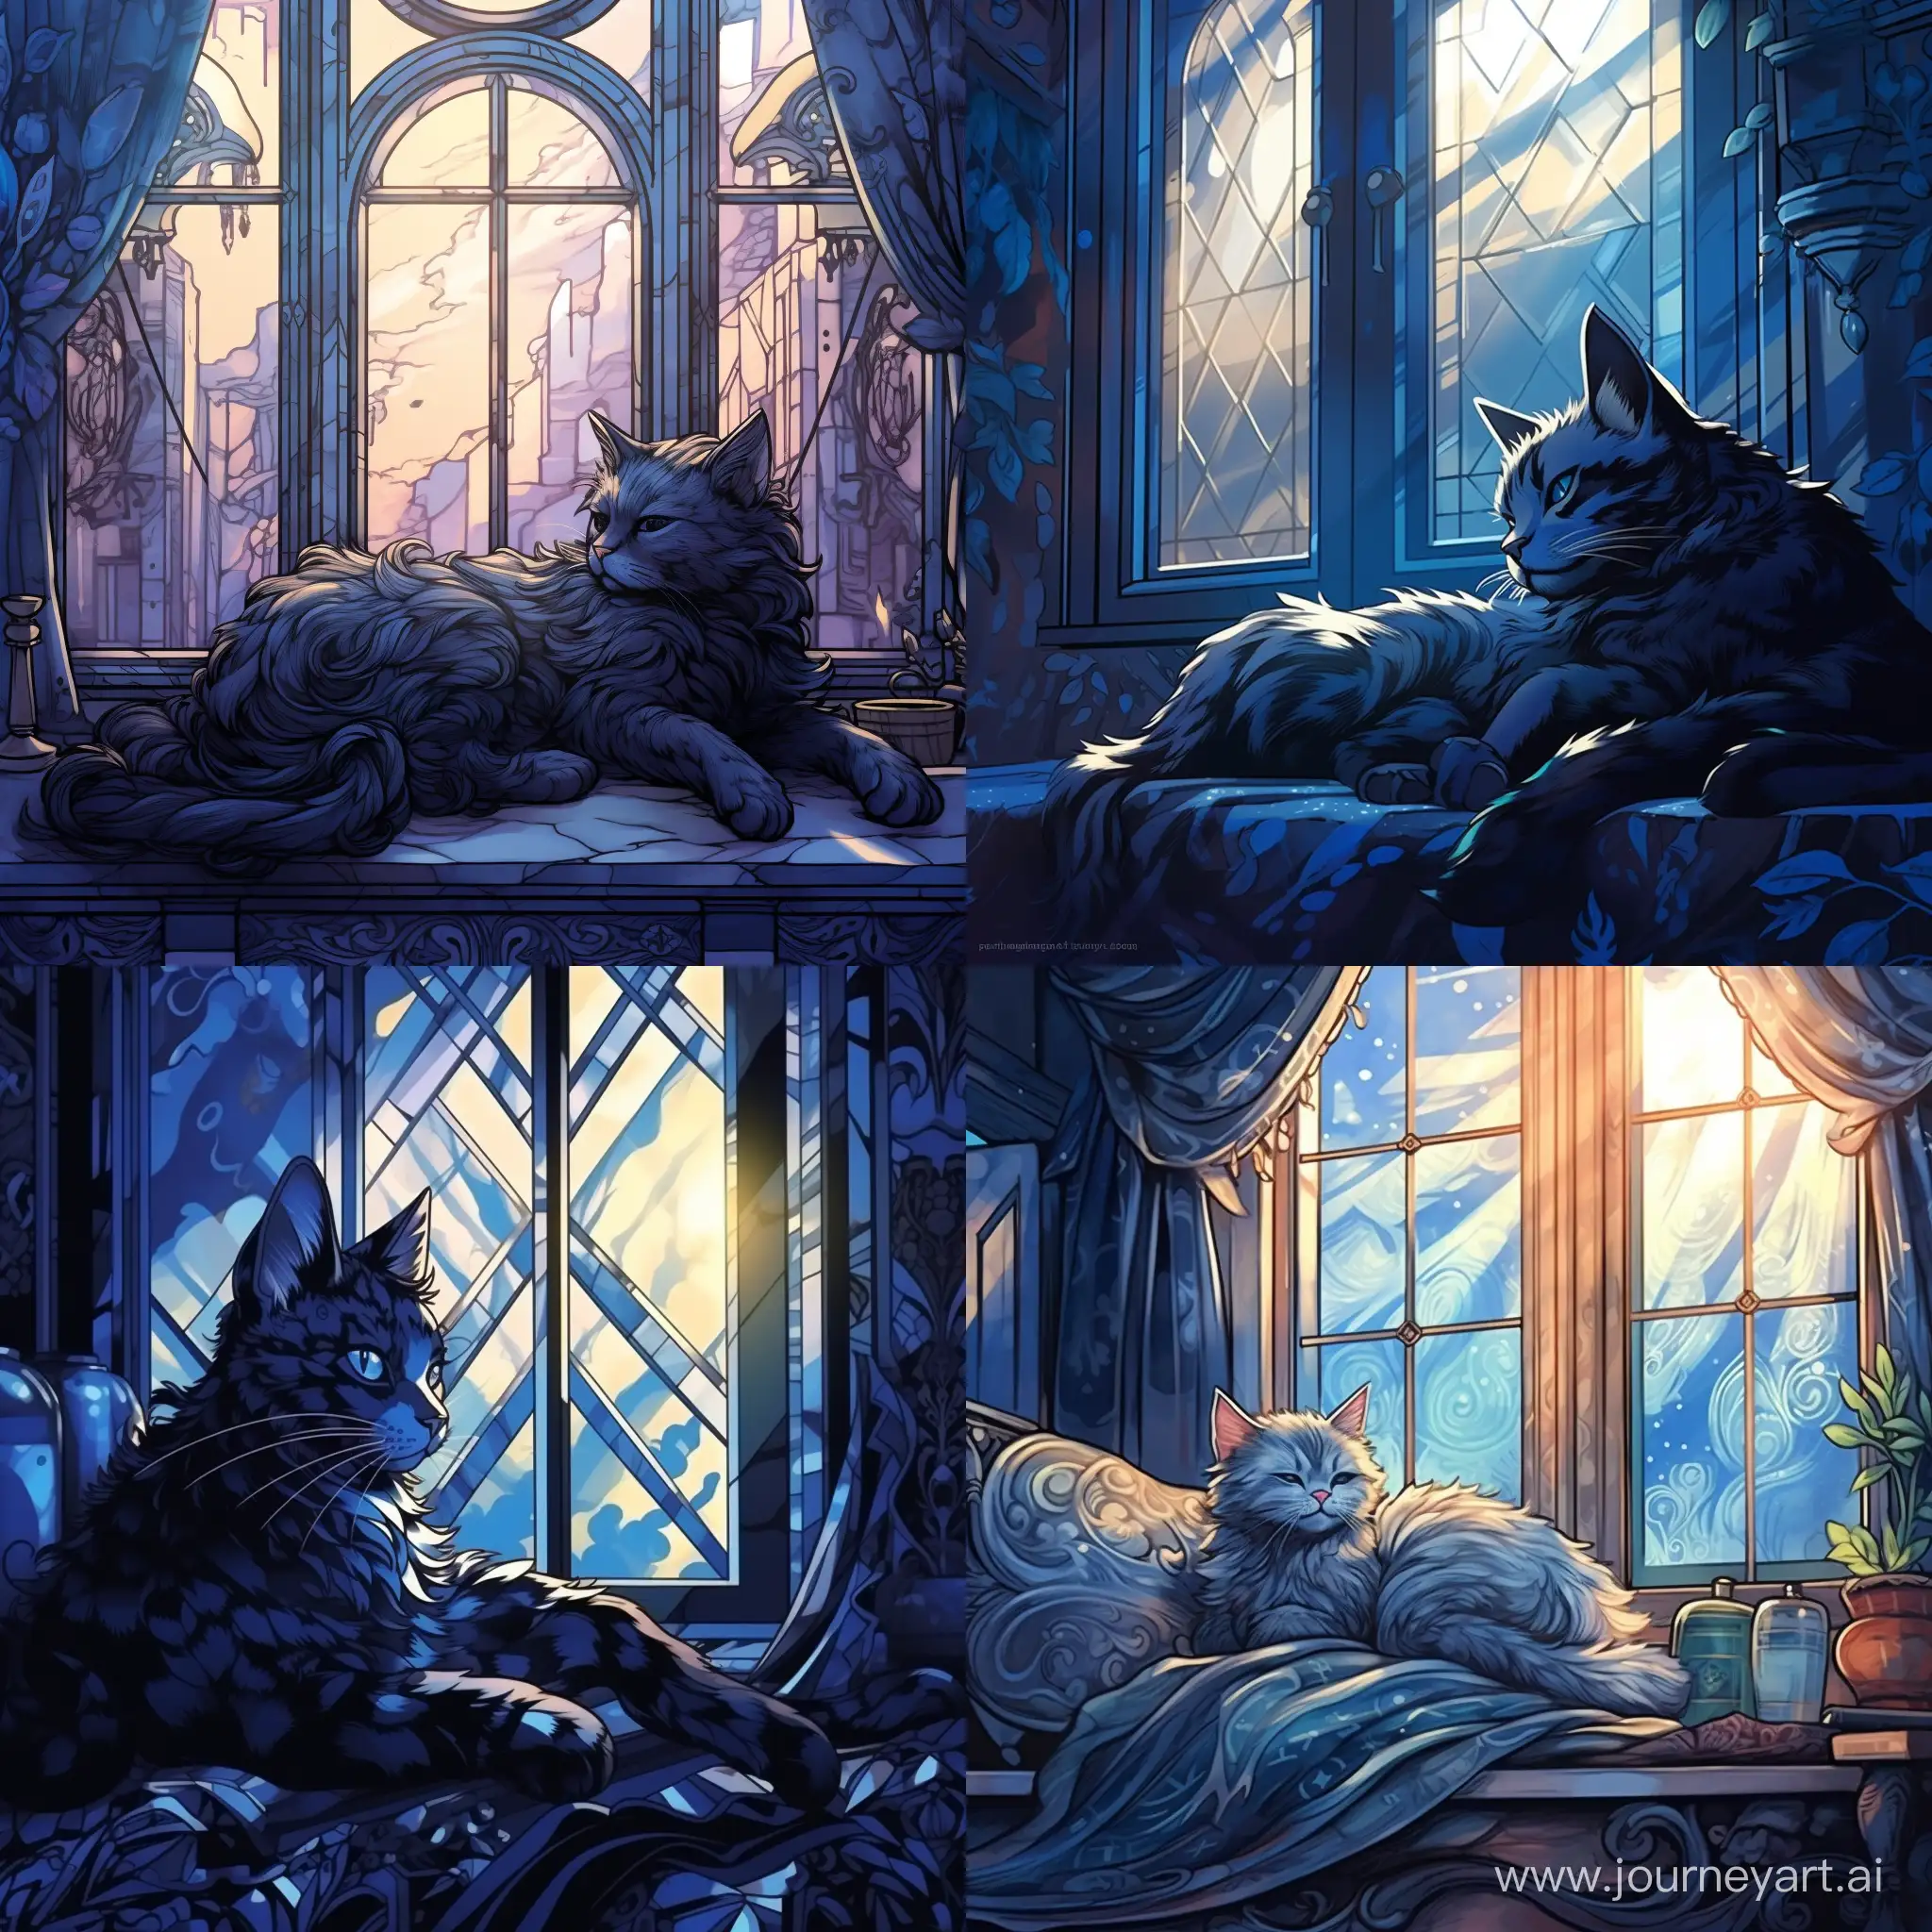 Иллюстрация, голубая кошка с черными узорами лениво разлеглась на фоне окна, мягкий свет проникает через окна отбрасывая блики на кошку